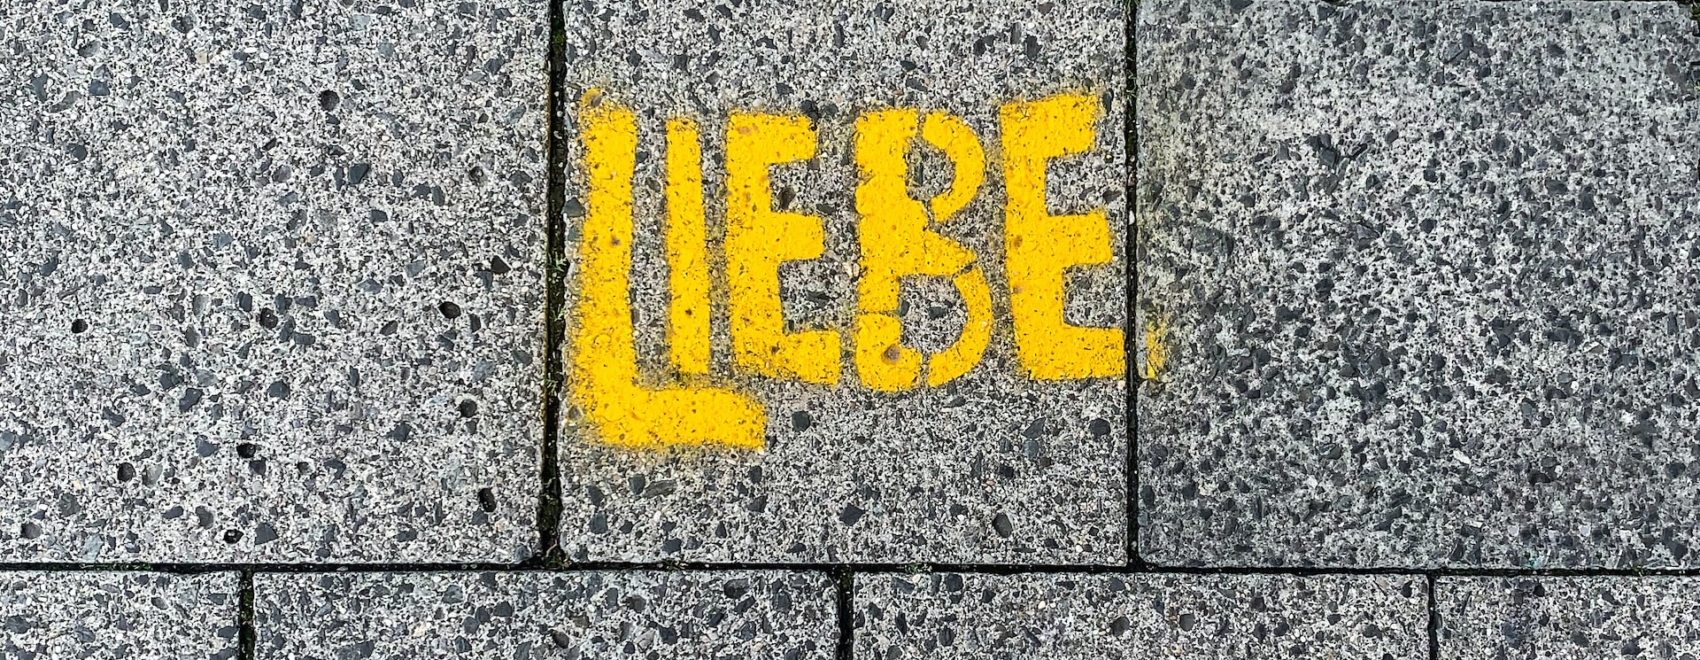 Gelbes Graffiti auf dem Boden mit Schriftzug "Liebe"